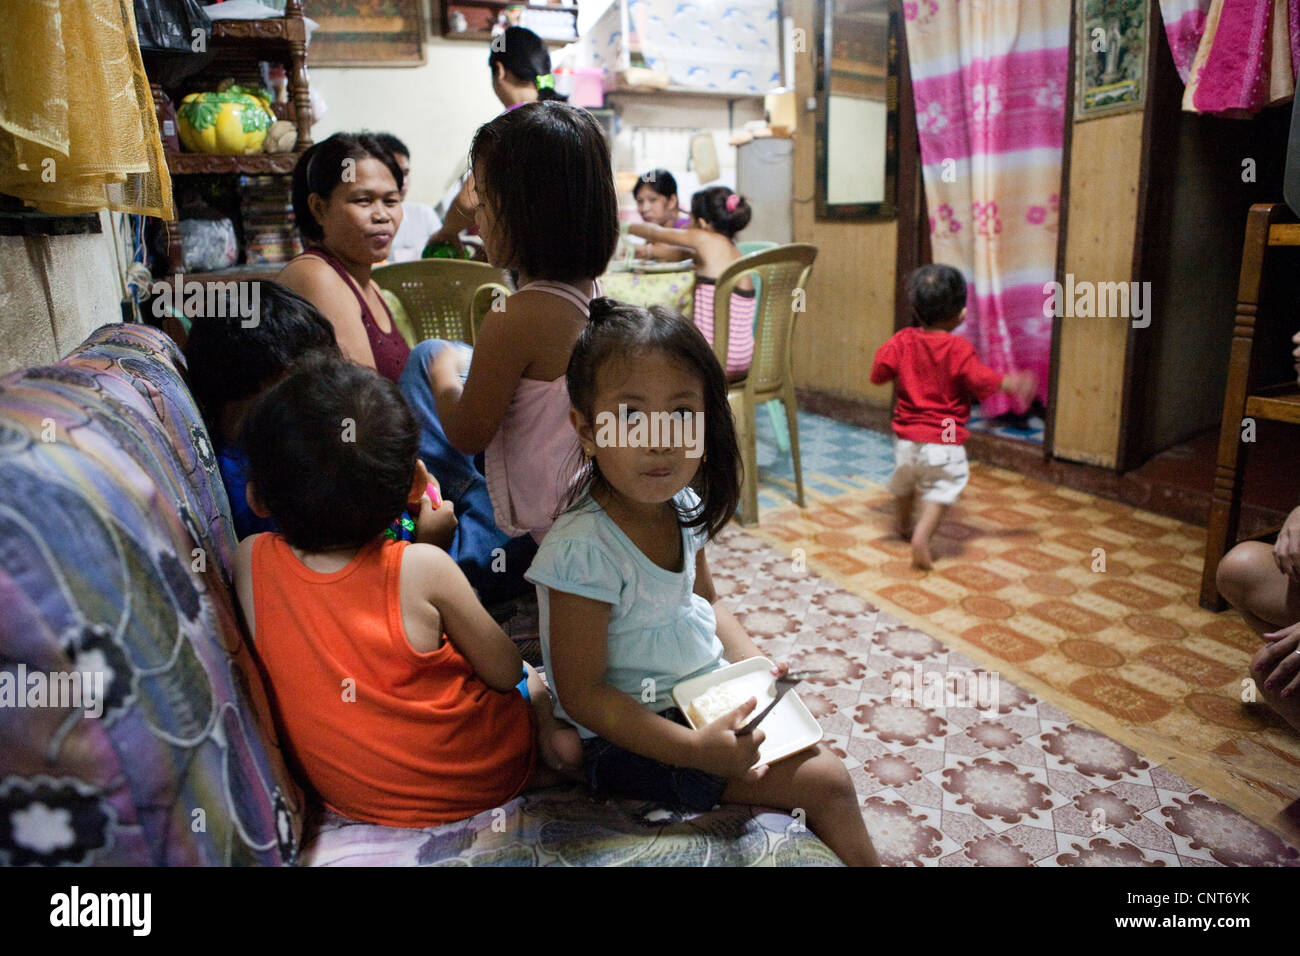 Philippinische Familie zusammen zu Hause. Lapu-Lapu City, Metro Cebu Mactan Island, Visayas, Philippinen. Stockfoto